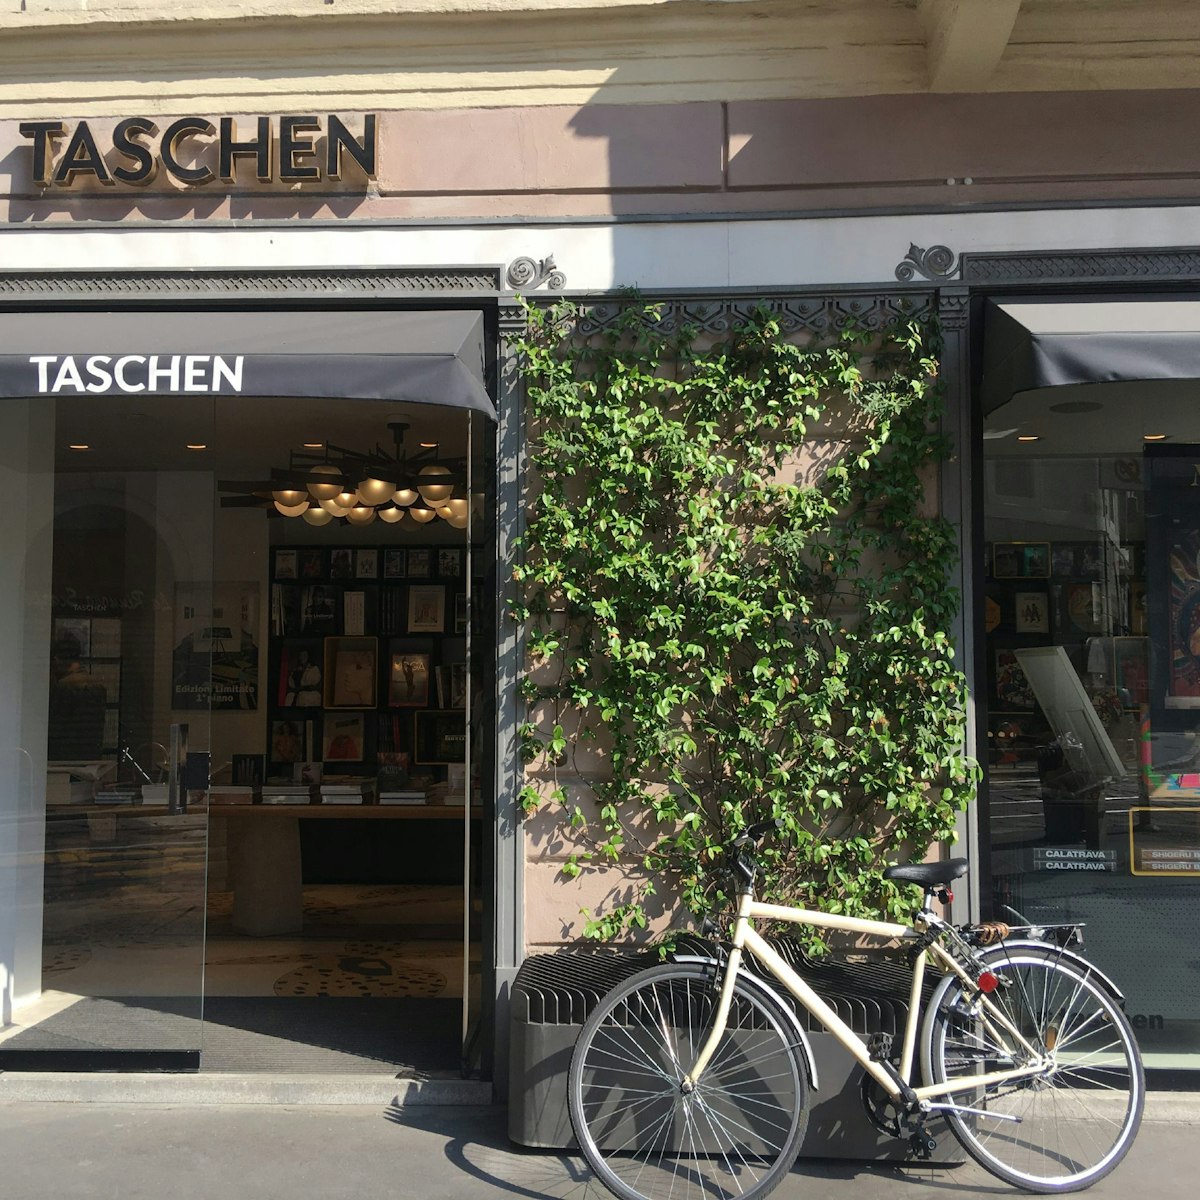 Taschen shop front